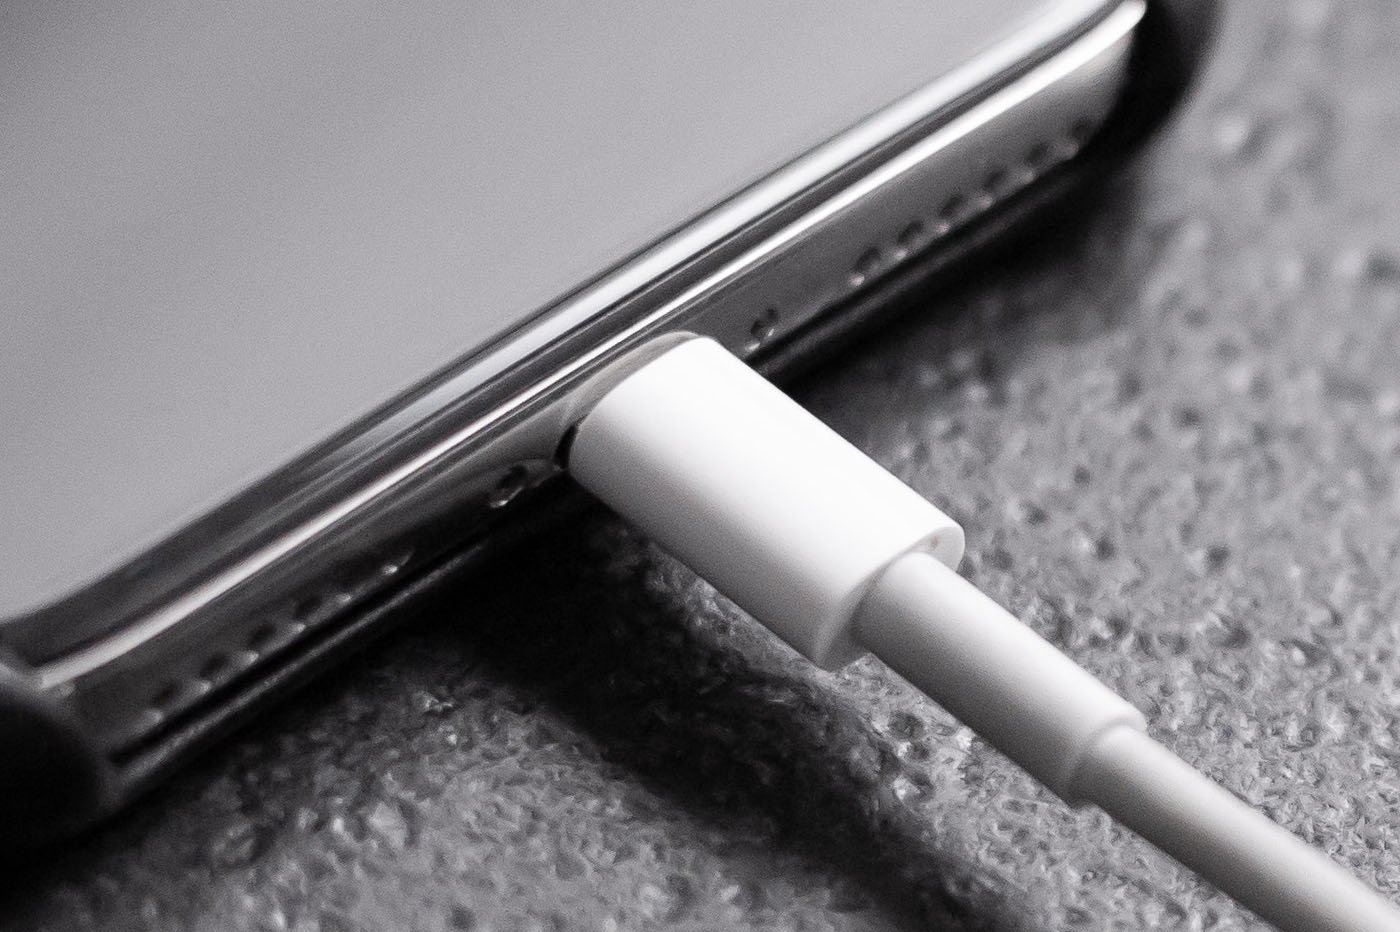 Chargeurs - Indispensables pour la recharge - Accessoires pour iPhone -  Apple (FR)